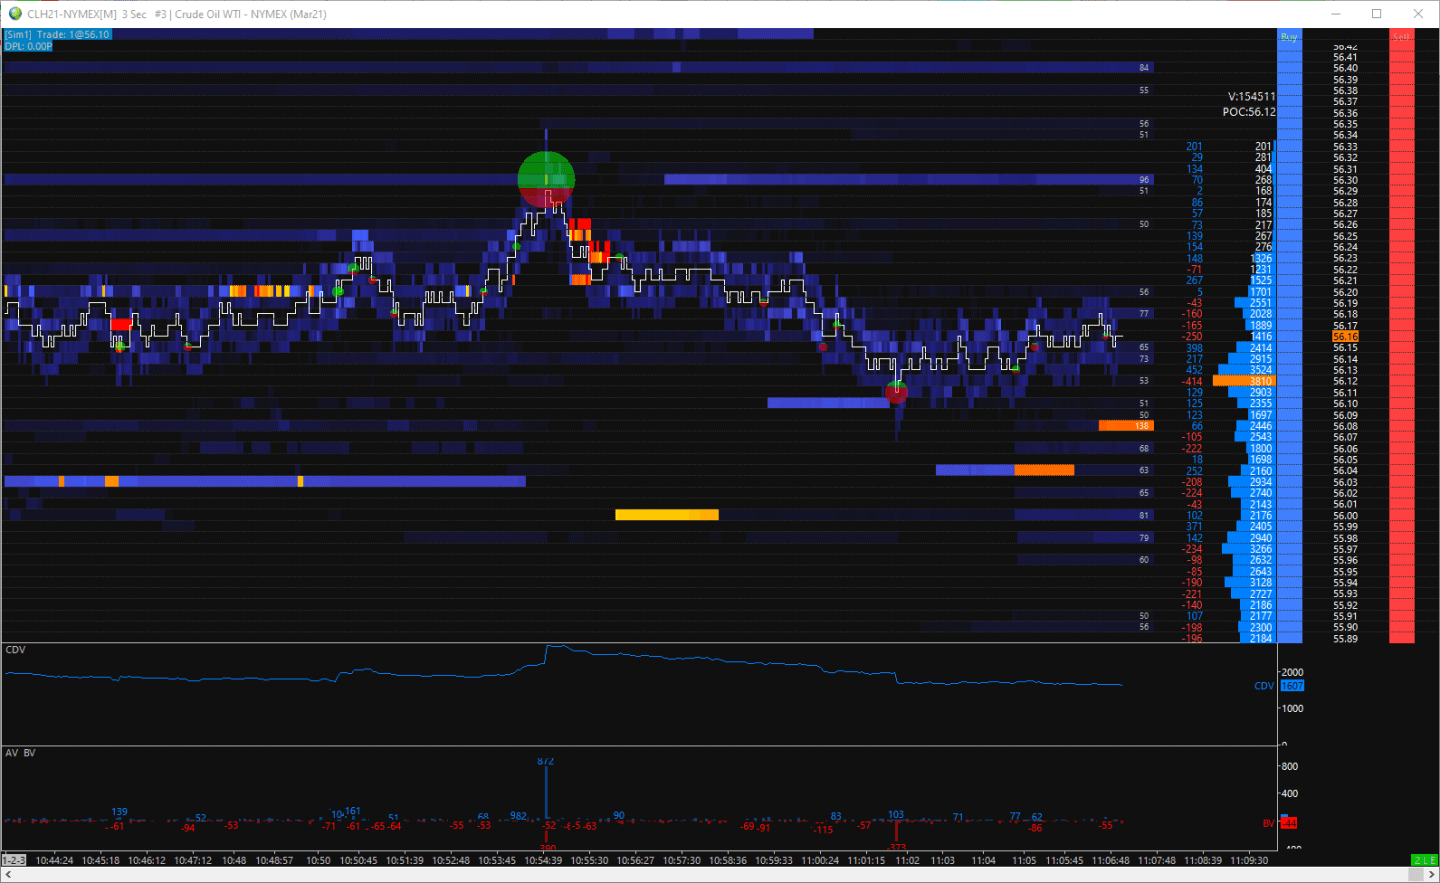 CL Heatmap Ask Bid Volume Dot Chart Trader